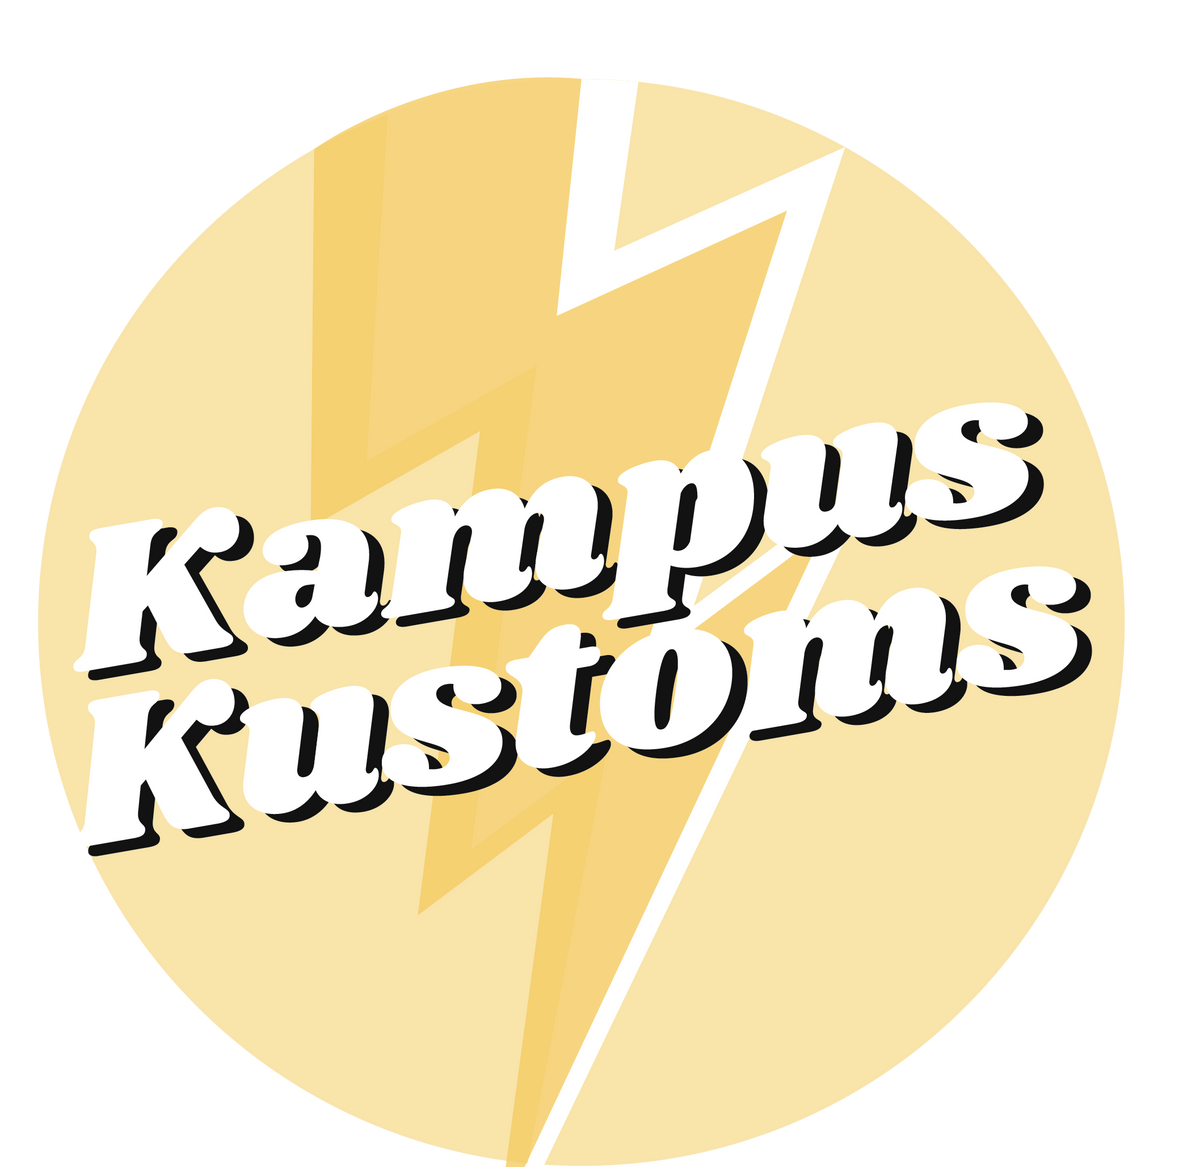 University of Kentucky Flannel – Kampus Kustoms